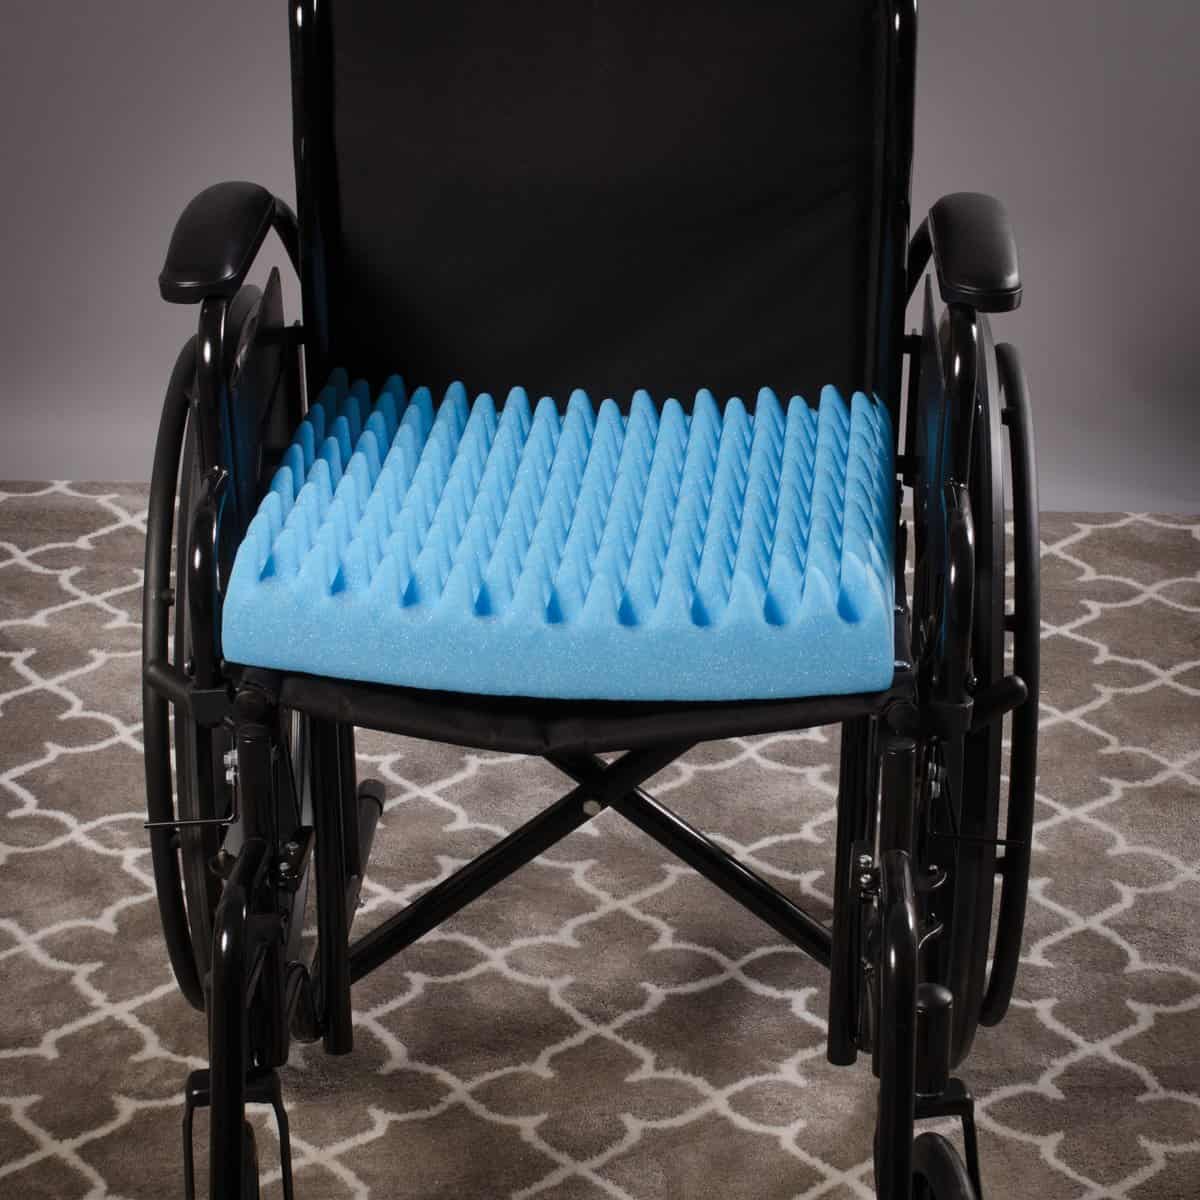 DMI Egg Crate Sculpted Foam Chair Cushion, Seat Cushion for Car, Office  Chair or Wheelchair Cushion to Relieve Back, Tail Bone Pain, Sciatica